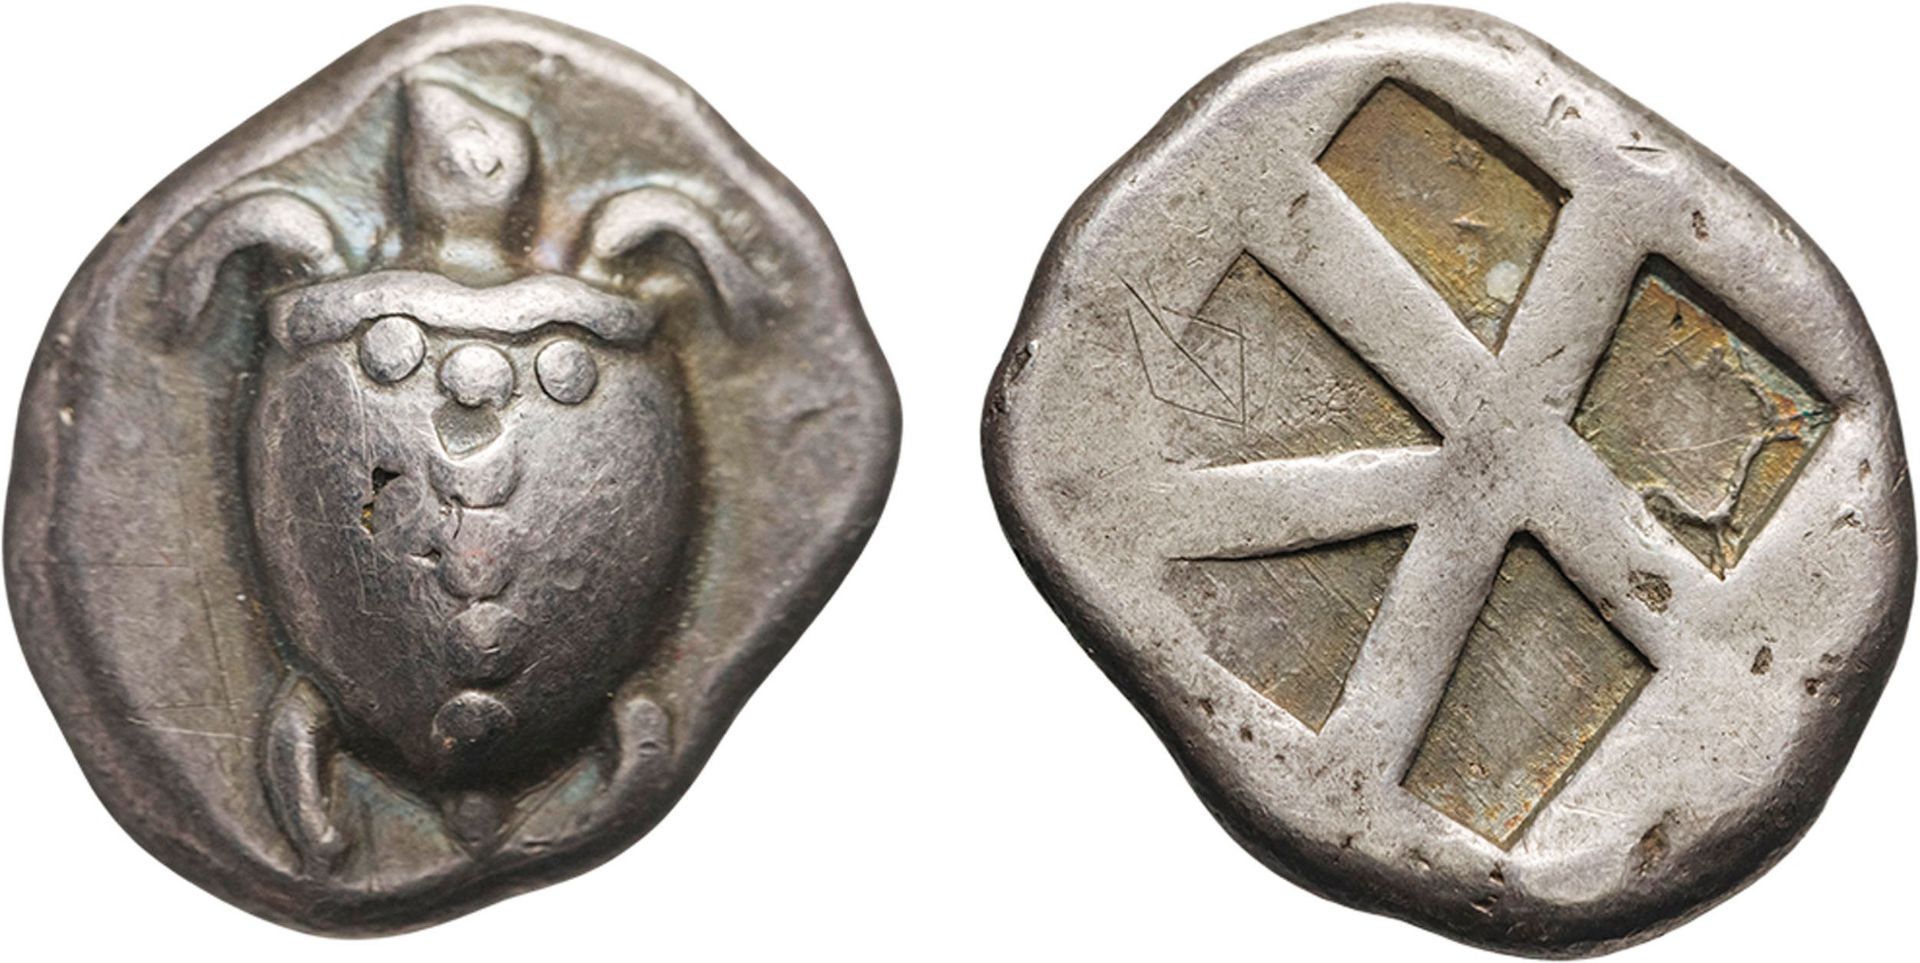 MONETE GRECHE. EGINA (CIRCA 550-450 A.C.). STATERE